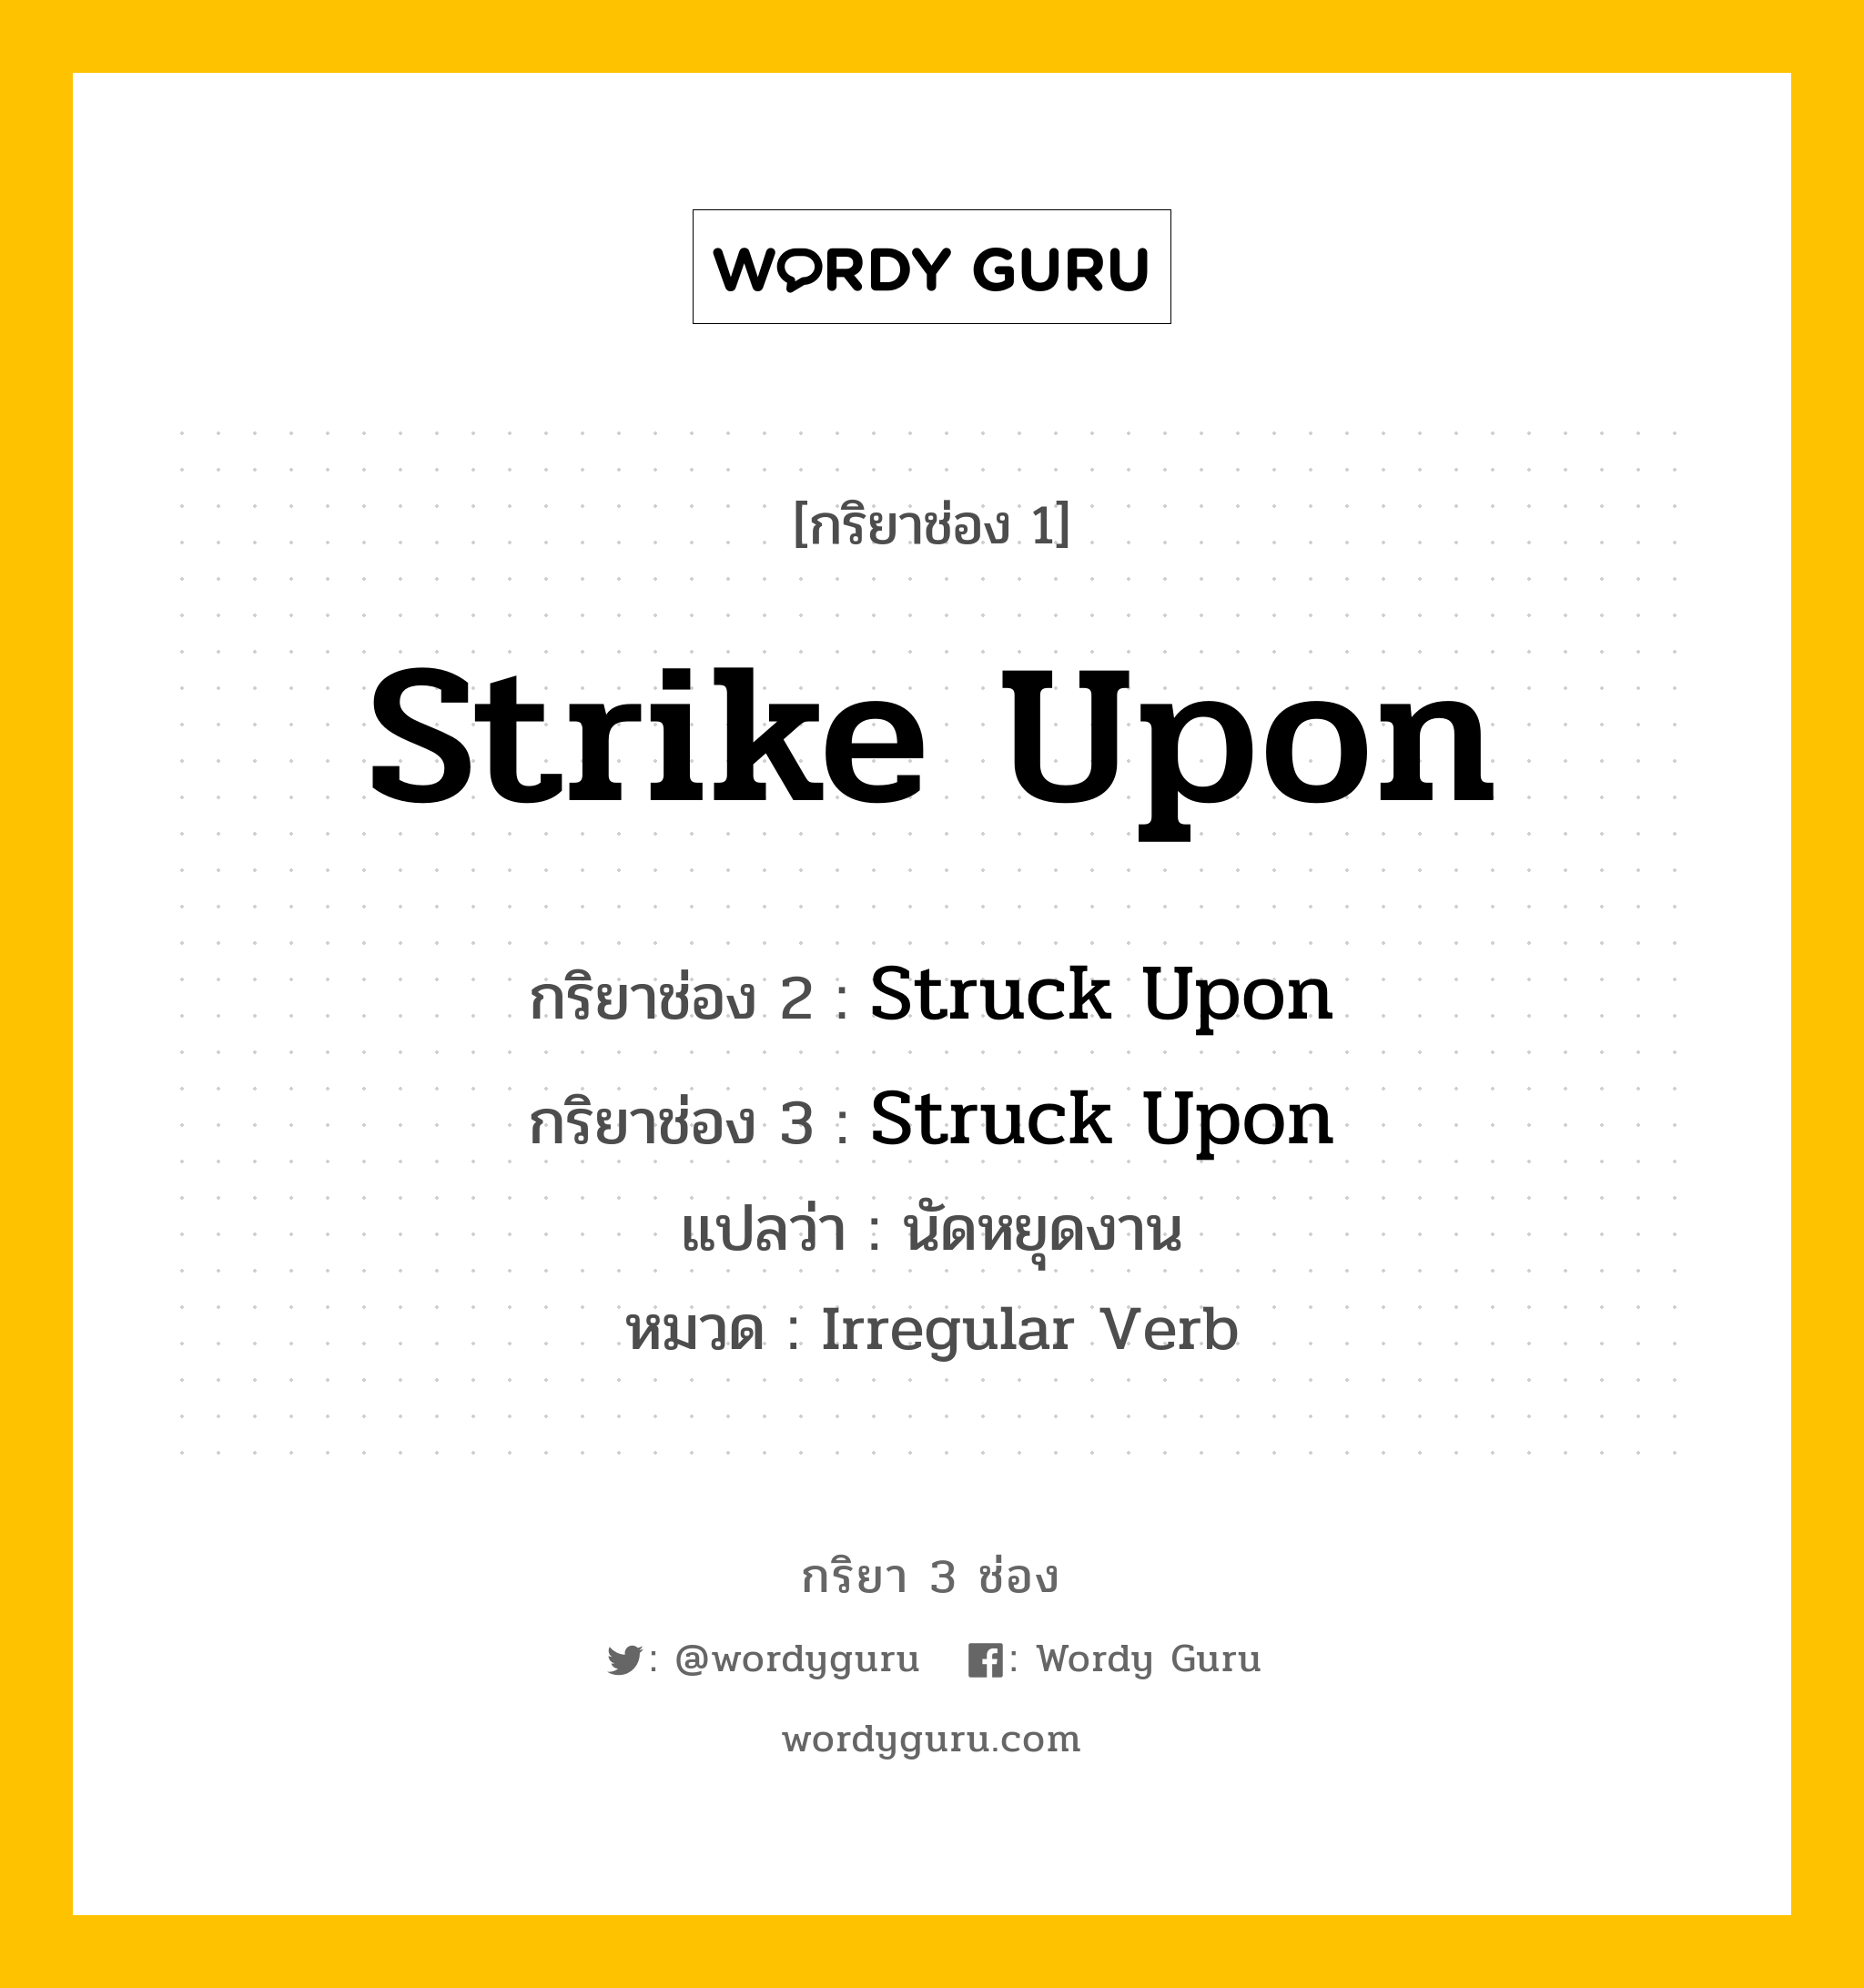 กริยา 3 ช่อง: Strike Upon ช่อง 2 Strike Upon ช่อง 3 คืออะไร, กริยาช่อง 1 Strike Upon กริยาช่อง 2 Struck Upon กริยาช่อง 3 Struck Upon แปลว่า นัดหยุดงาน หมวด Irregular Verb หมวด Irregular Verb